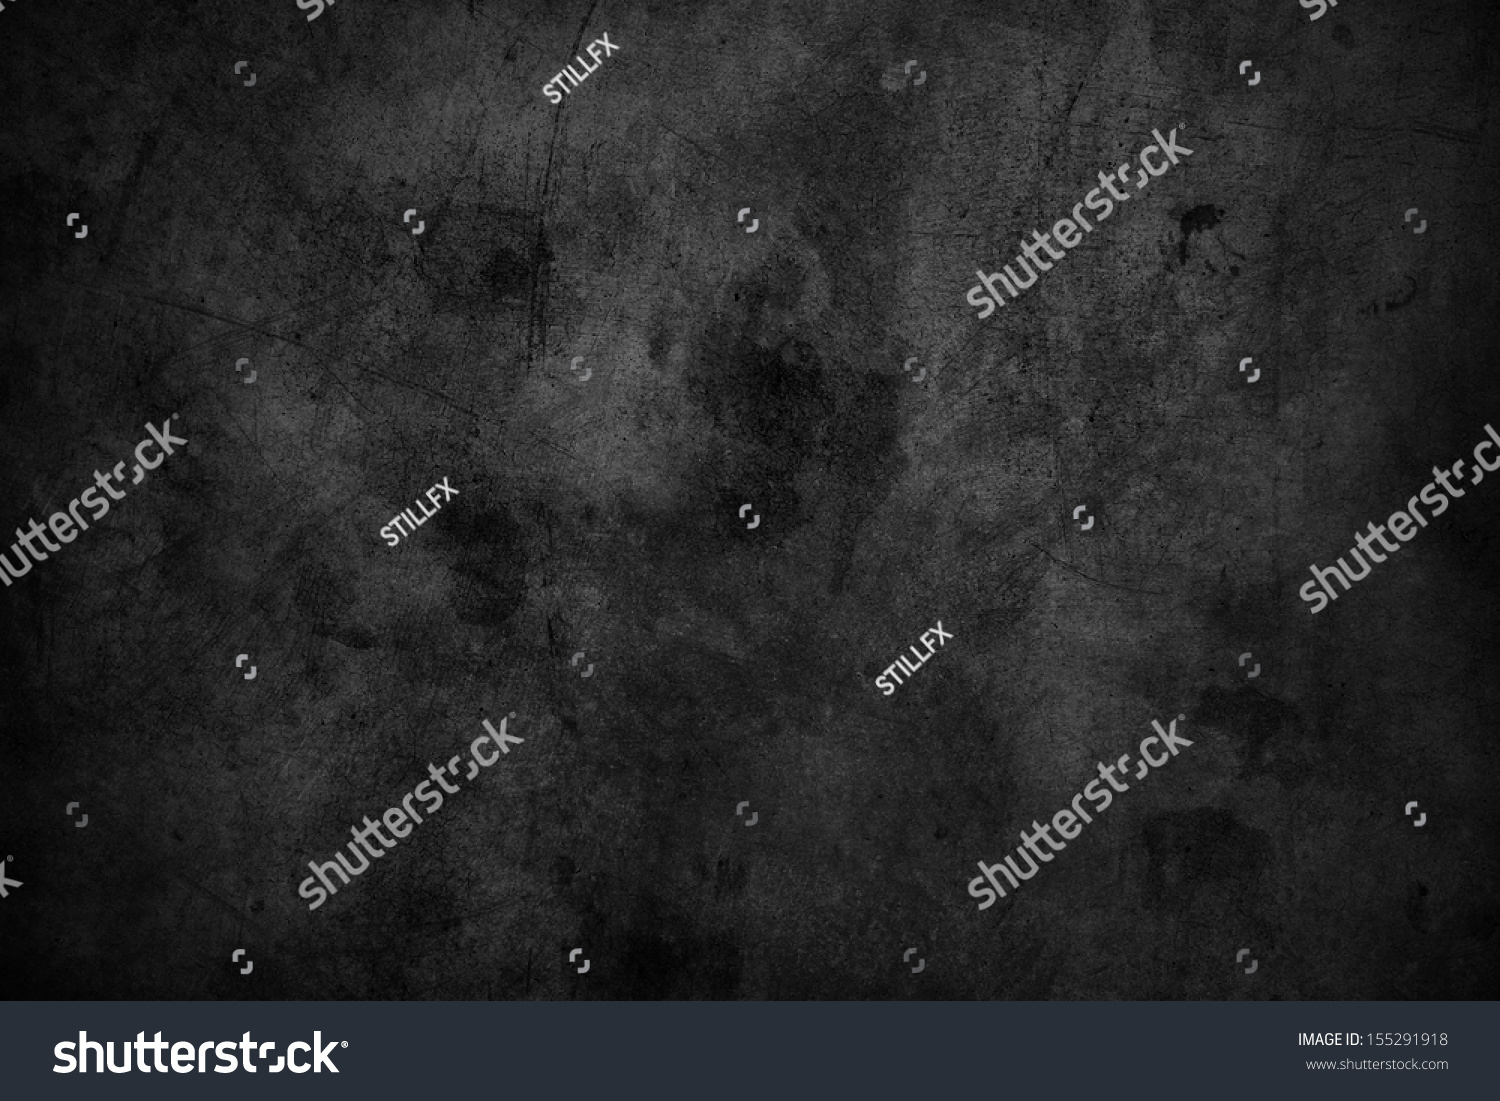 Closeup of dark grunge textured background #155291918